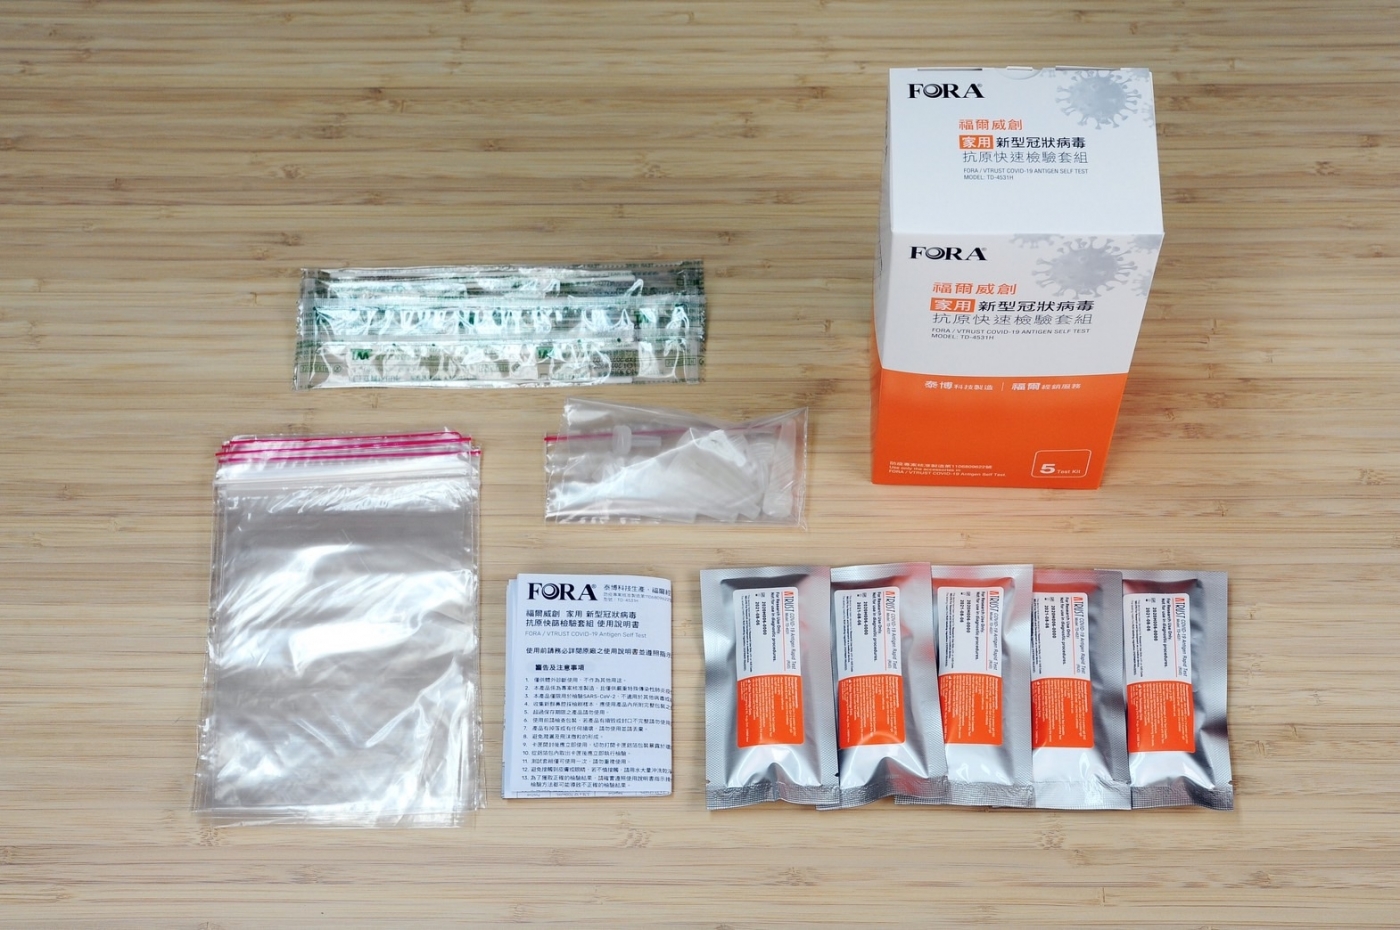 Khi mua bộ kit sàng lọc nhanh COVID-19 tại nhà cần chú ý xác nhận tem nhãn trên bao bì sản phẩm. (Nguồn ảnh: kho ảnh Pixabay)